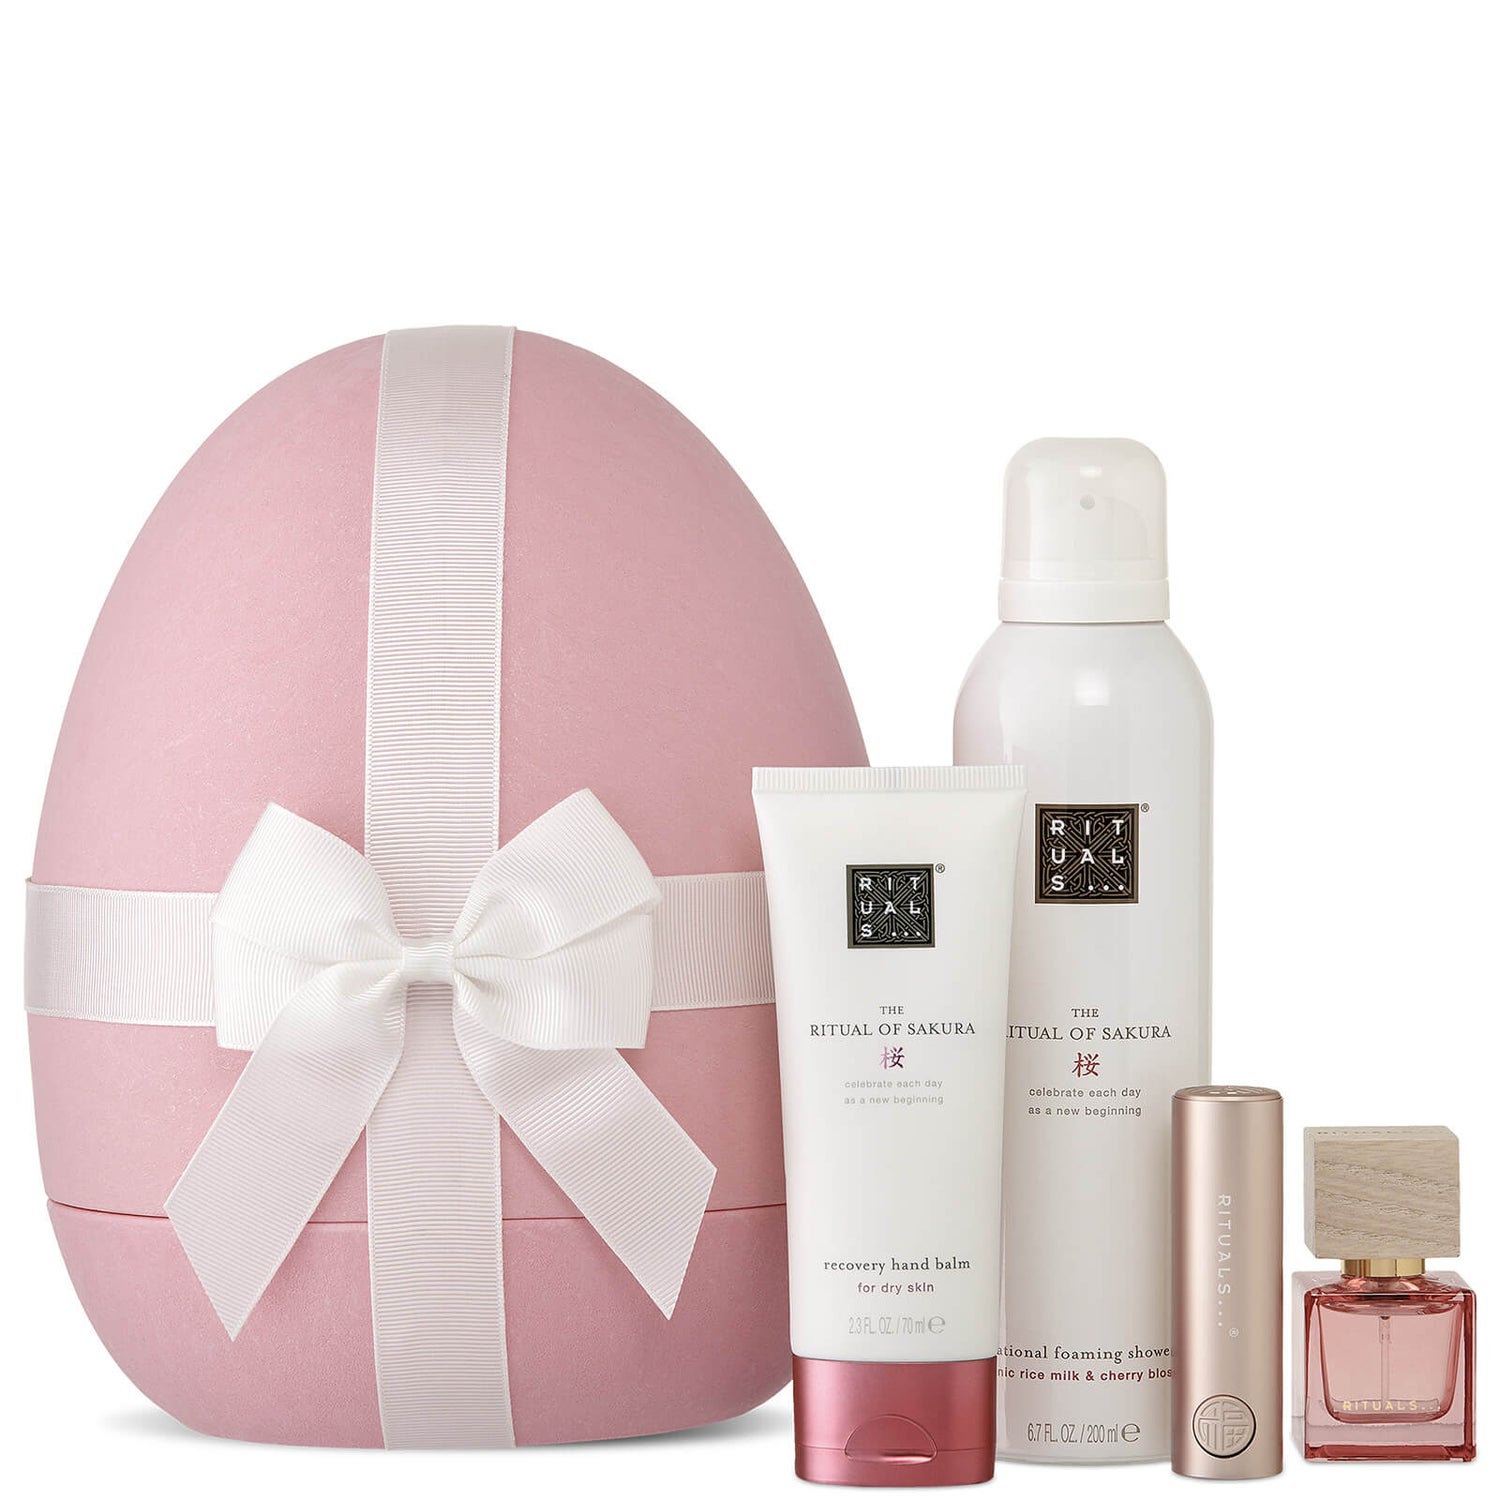 Rituals The Ritual of Sakura Easter Egg Gift Set (Worth £42.80)